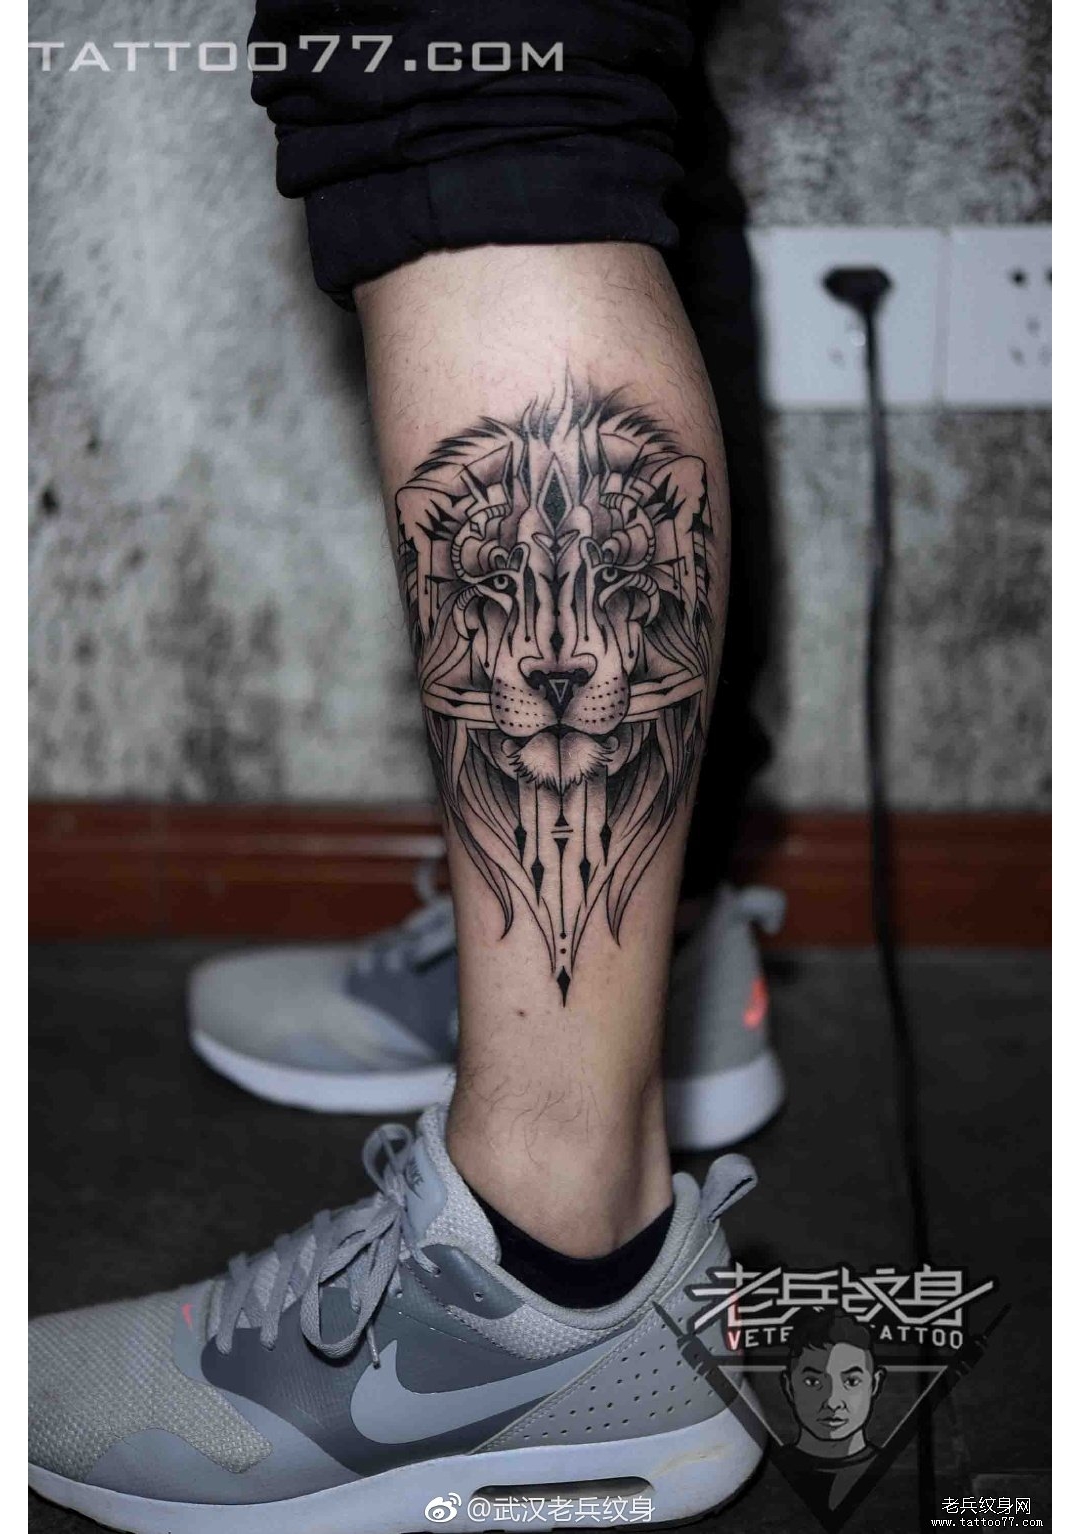 武汉纹身店打造的小腿狮子纹身图案作品